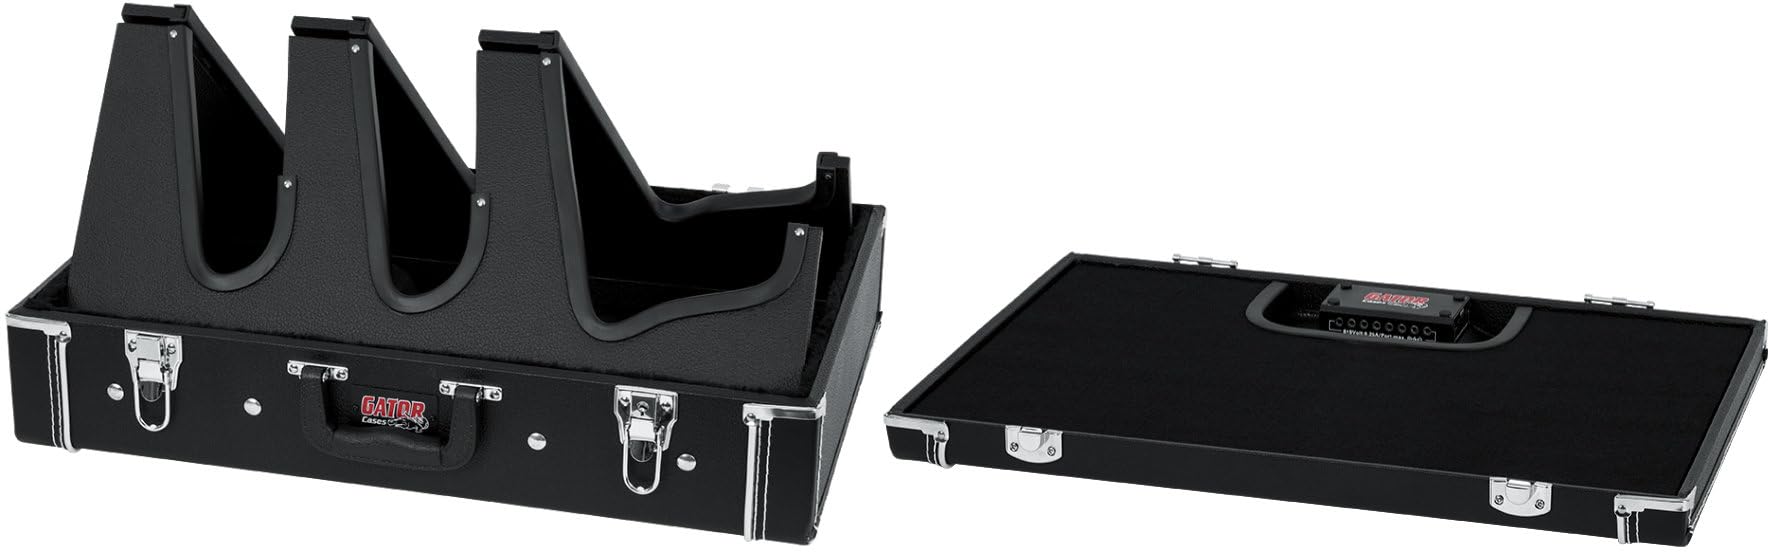 Gator Cases Gig Box Jr. - Tablero de pedal con soporte de guitarra integrado 3 veces | Se adapta a la mayoría de guitarras eléctricas y acústicas; superficie del pedal de 21.5 x 15 pulgadas (GW-GIGBOXJR)